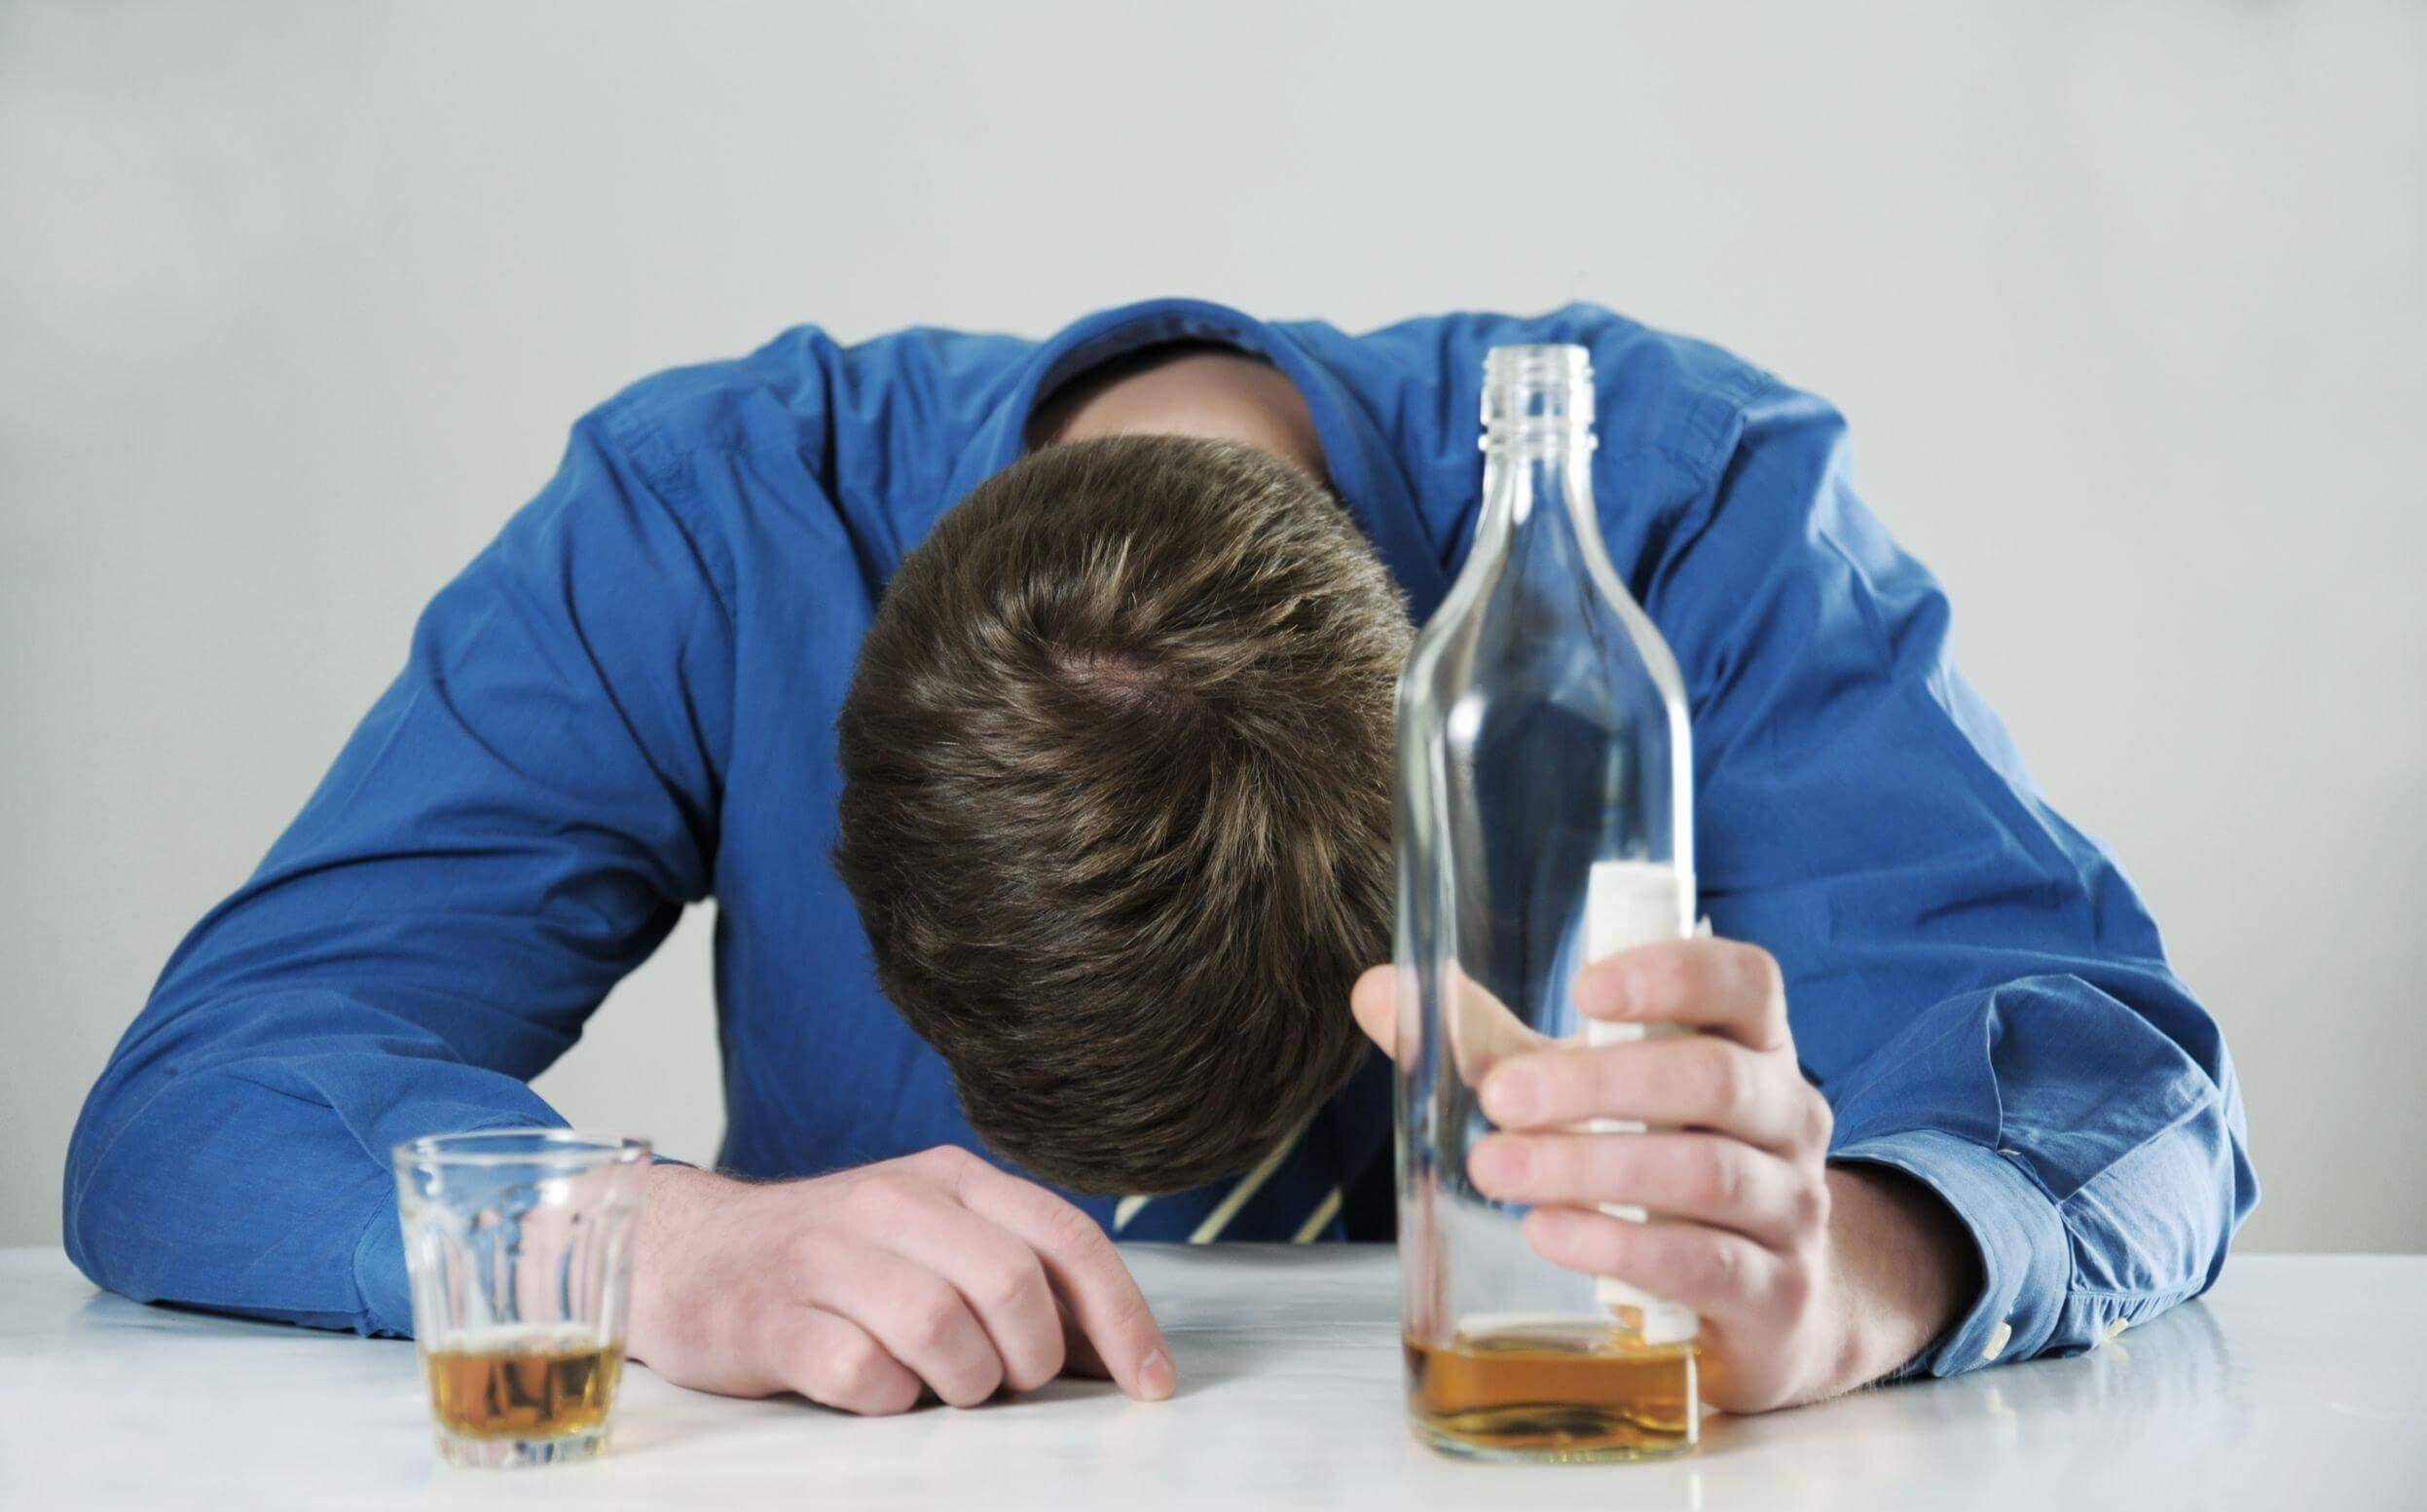 Как пережить позор после пьянки советы психолога. если стыдно после пьянки то что с этим делать